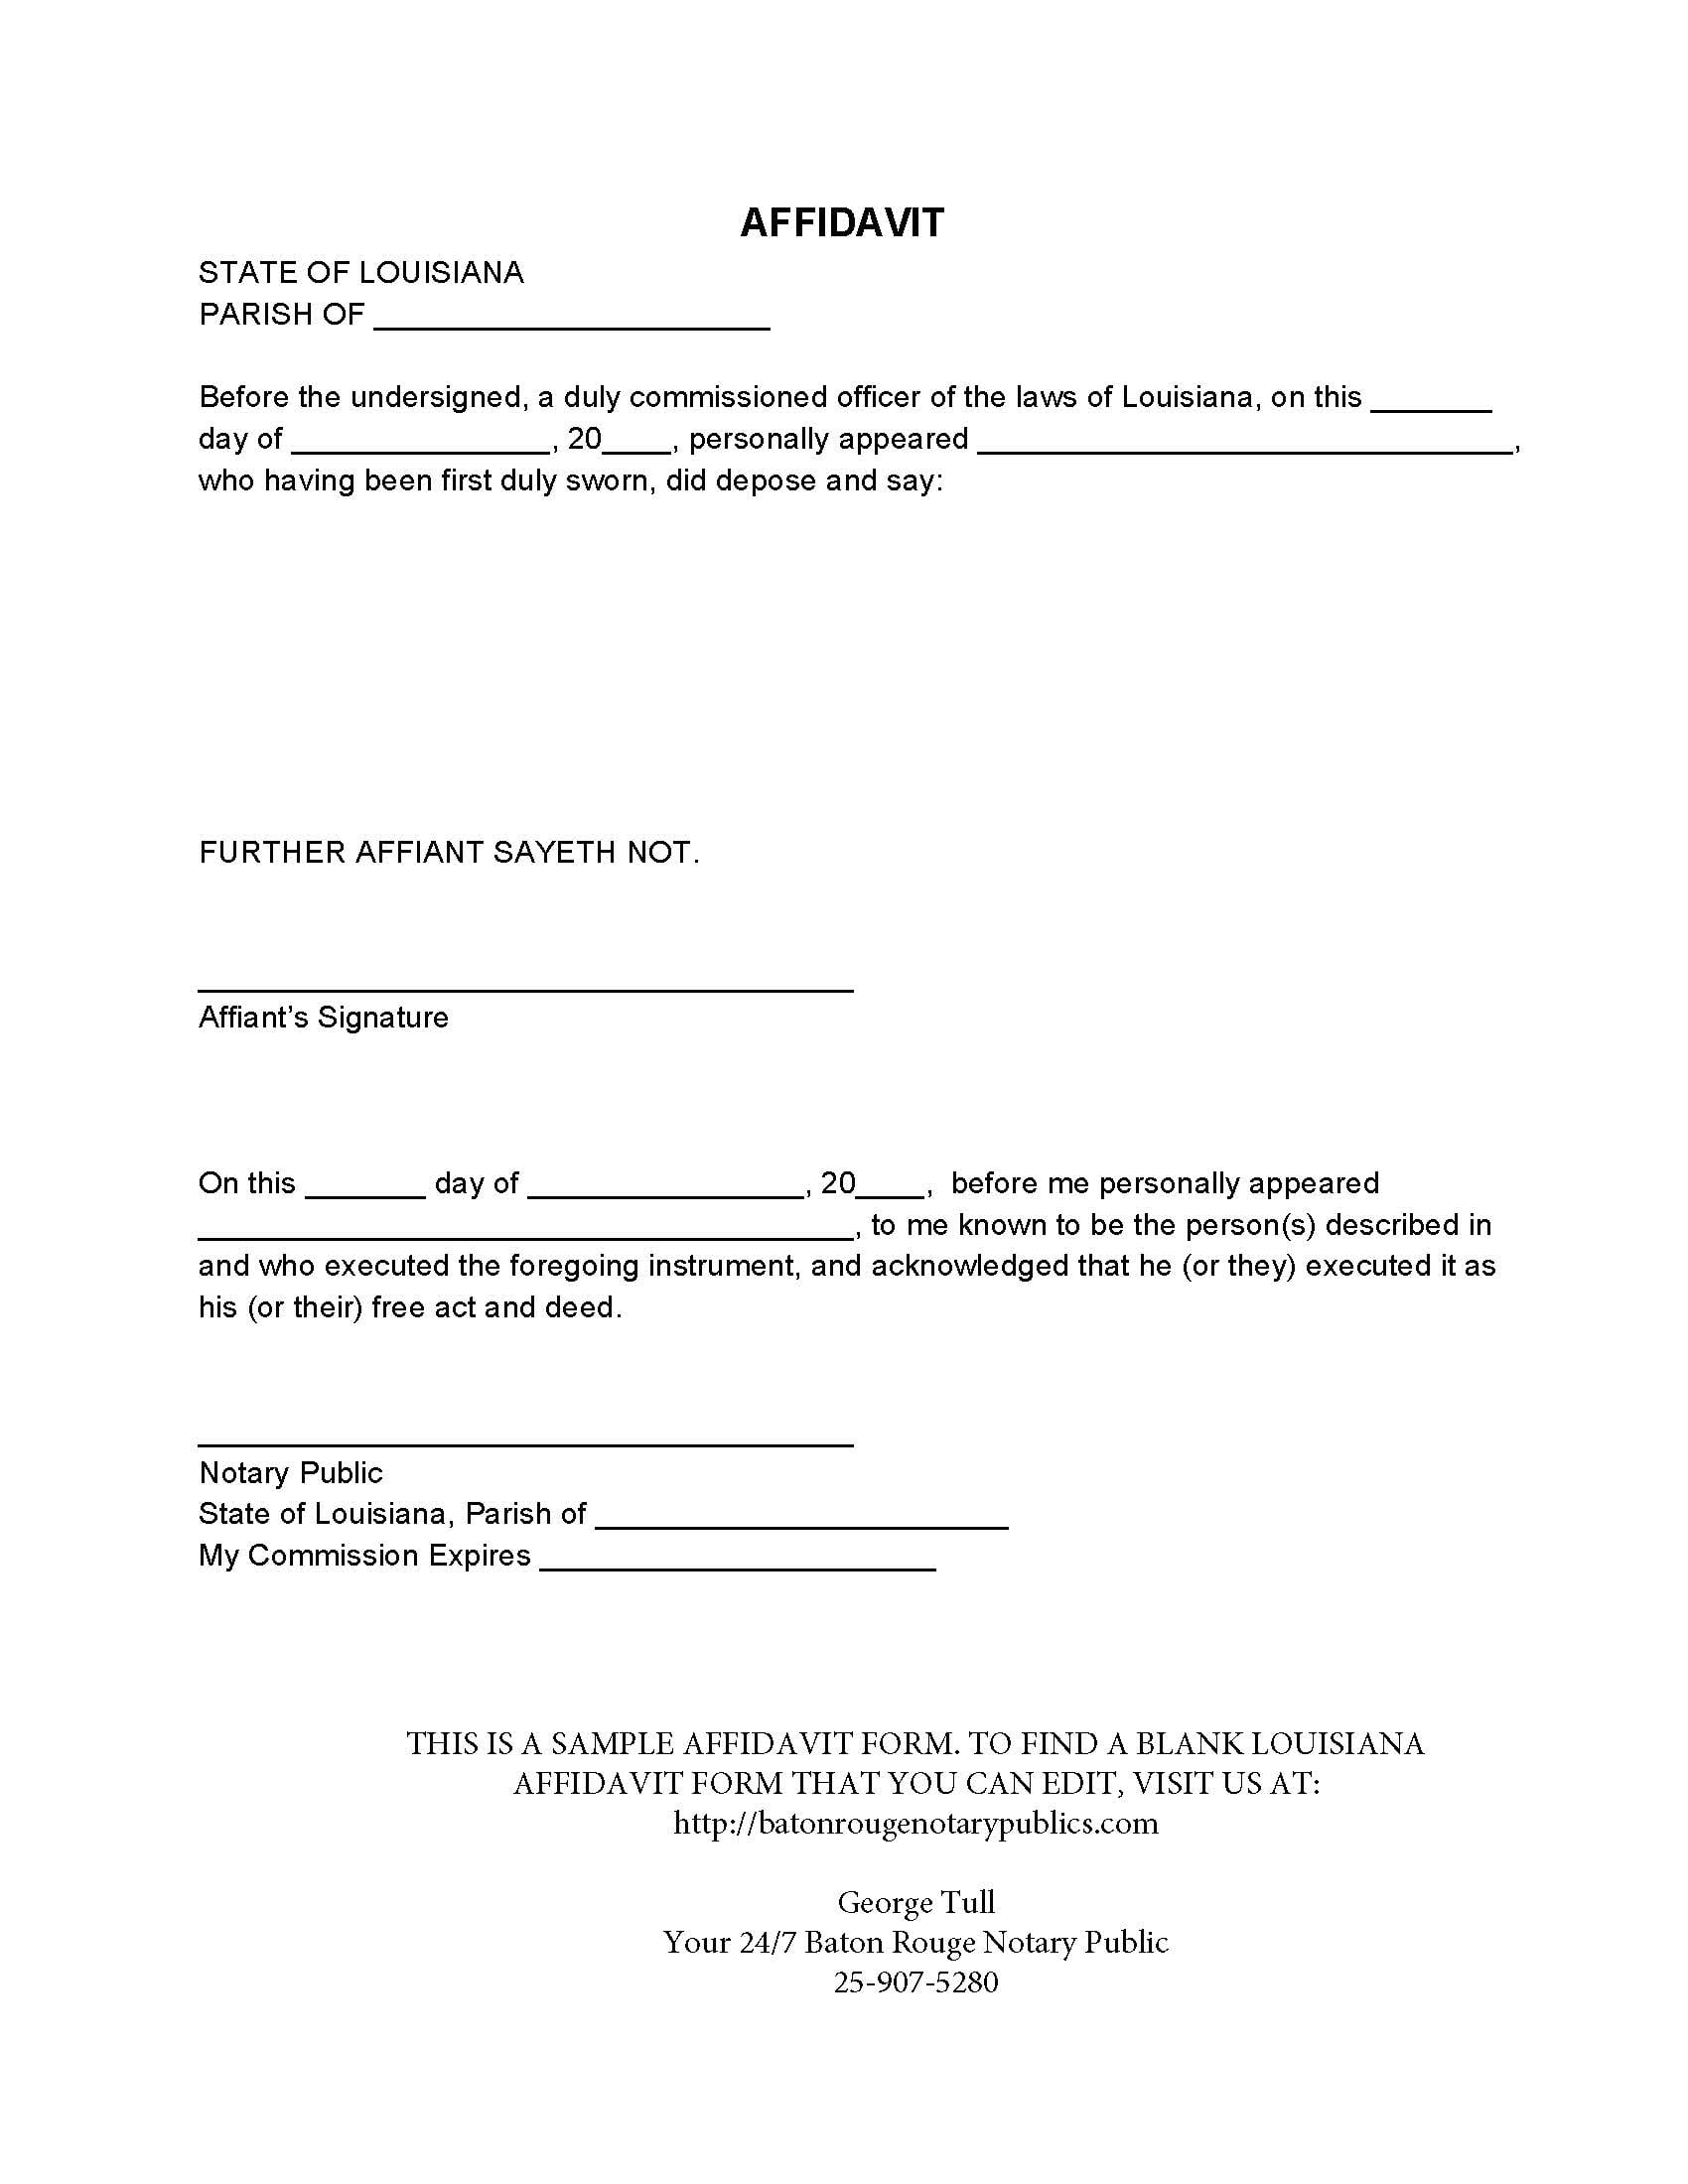 signed-affidavit-example-free-printable-documents